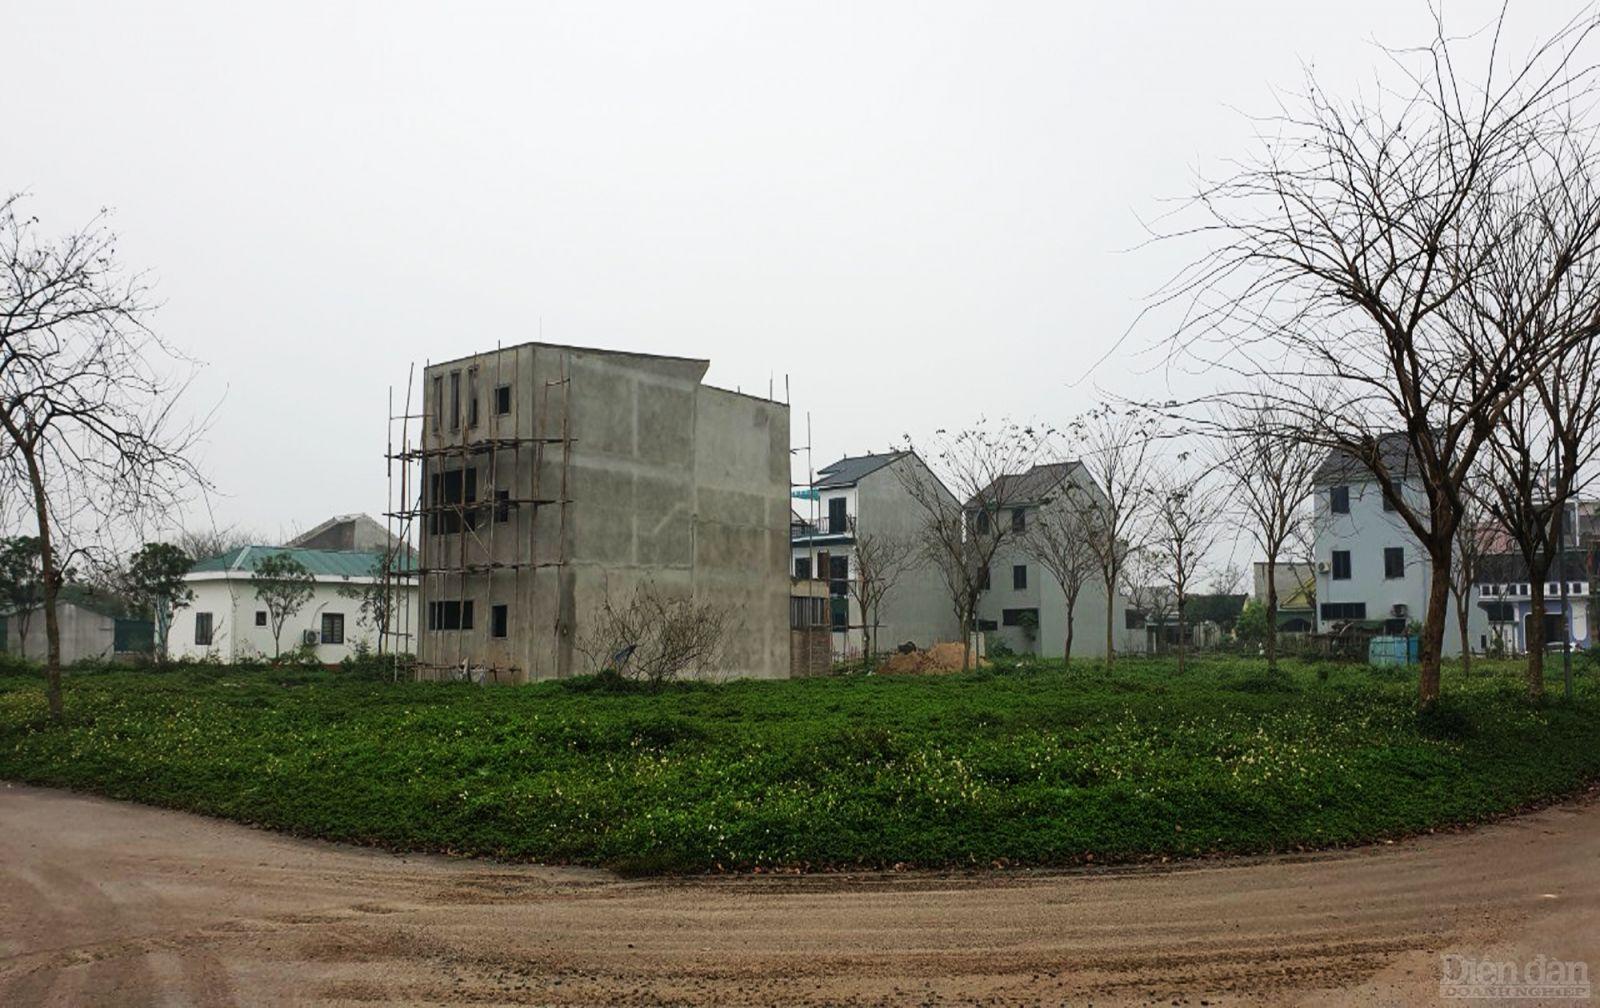 Dự án Khu nhà ở tổng hợp VINHLAND của Công ty CP Tổng Công ty Sài Gòn Land tại xã Nghi Kim, TP Vinh đã chuyển nhượng và cấp giấy chứng nhận quyền sử dụng đất cho 229 hộ gia đình cá nhân với diện tích 34.811,4m2